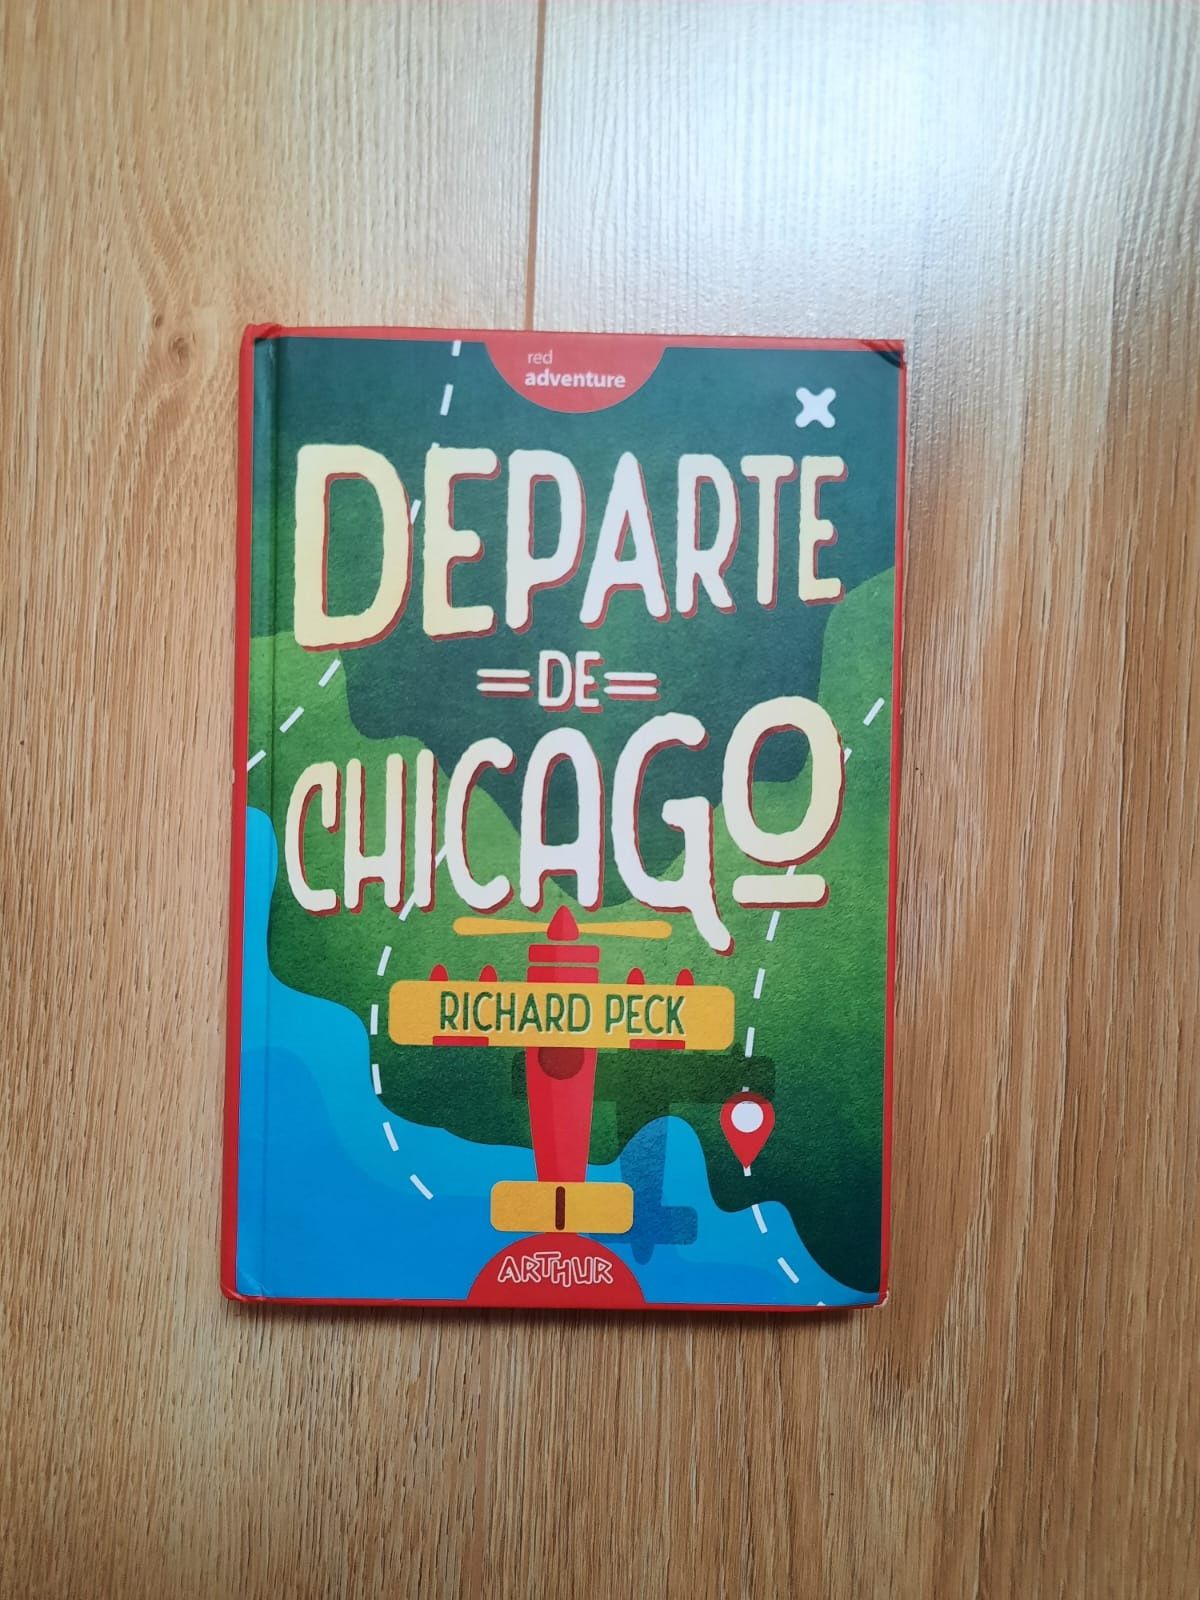 Vând carte Departe De Chicago scrisă de Richard Peck